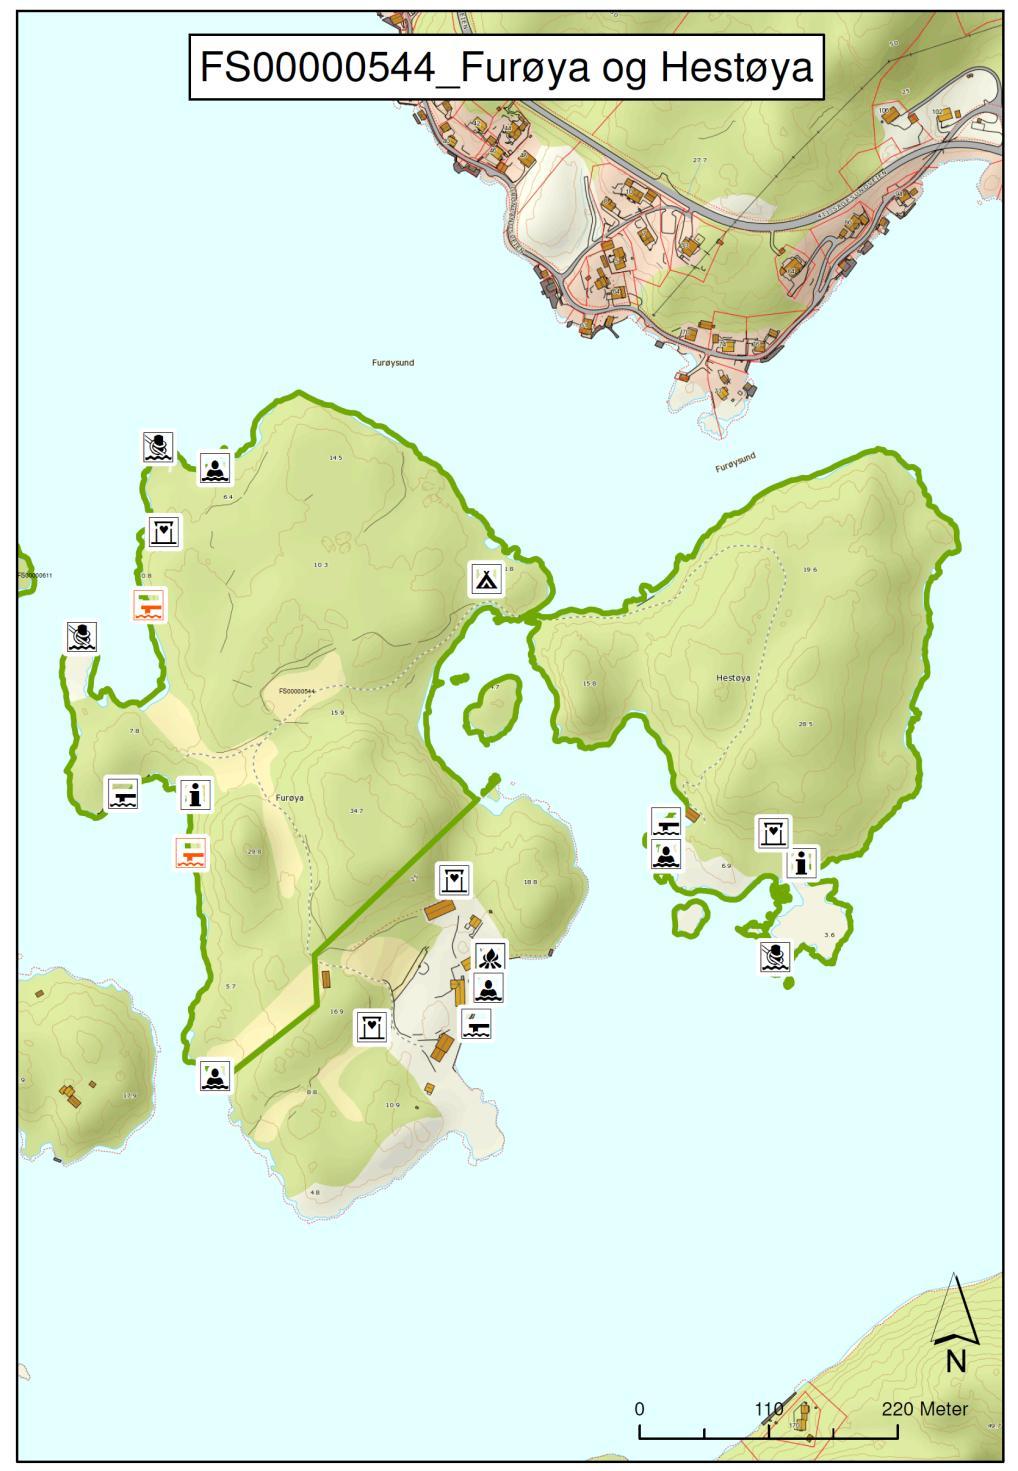 DEL 2: Forvaltningsplan : Furøya og Hestøya Kart nr. 13: Furøya og Hestøya, FS 00000544. Røde symboler står for nye tiltak. Sorte symboler står for eksisterende tilrettelegging.